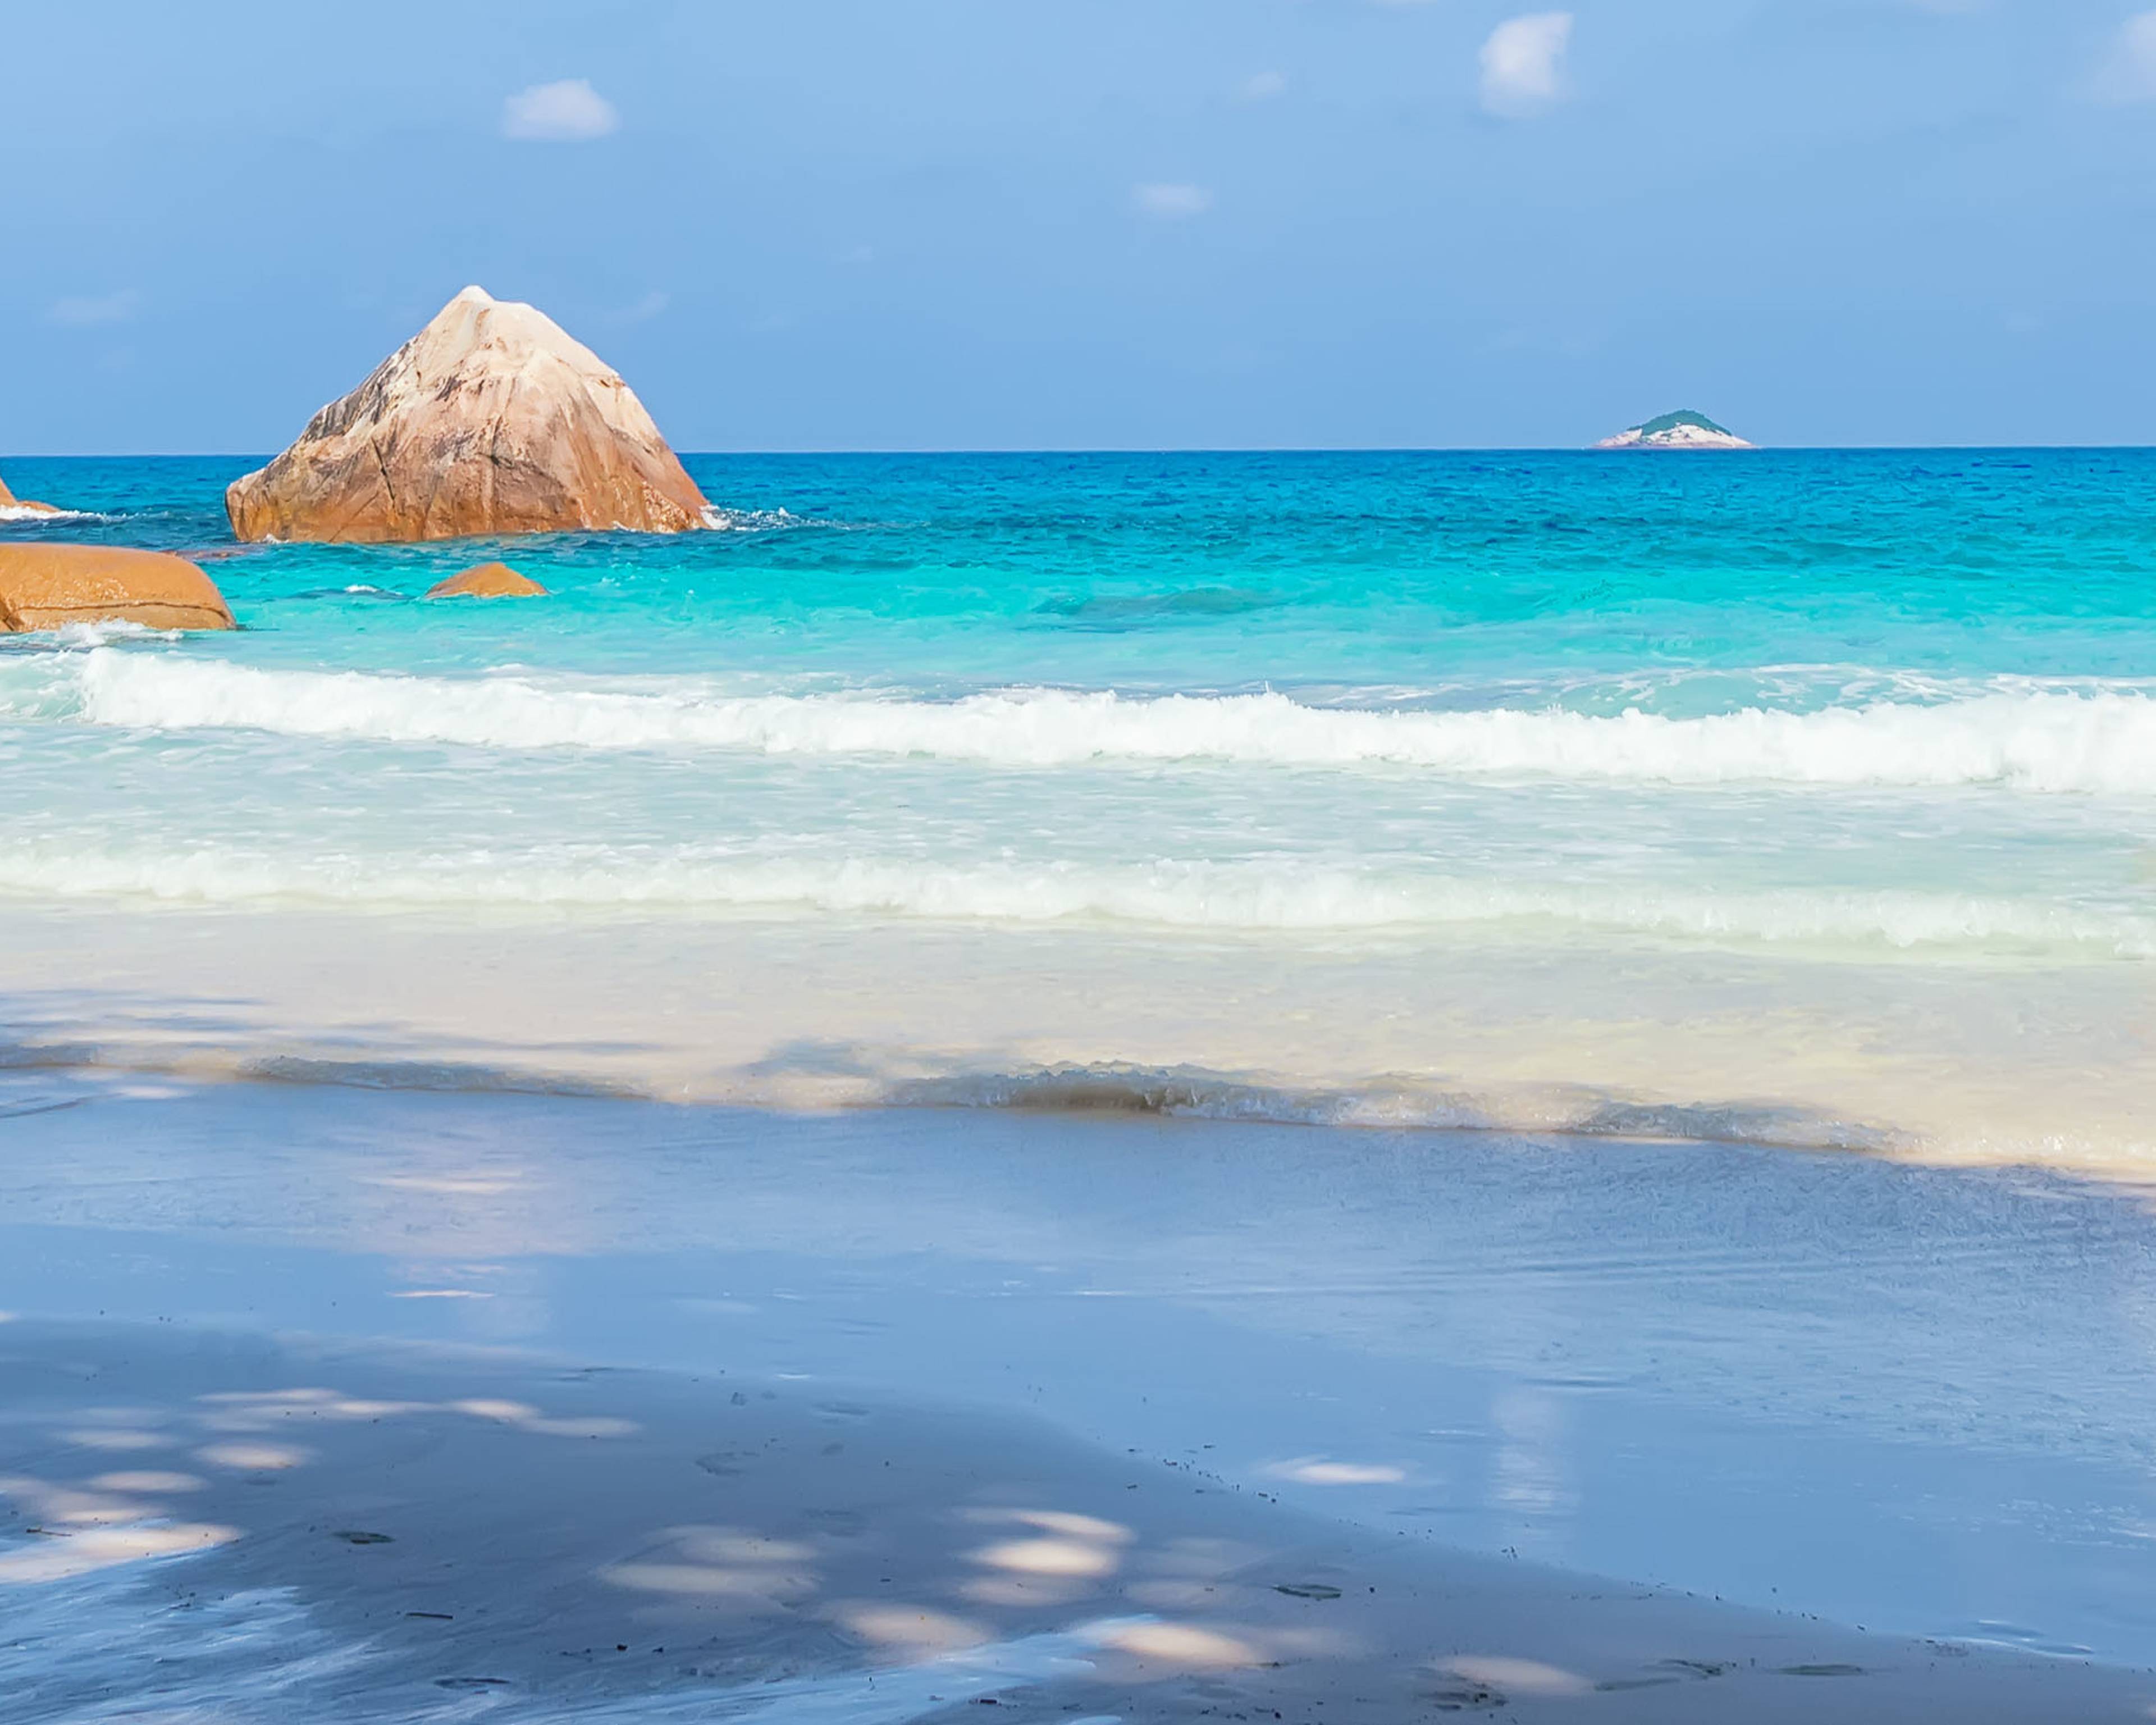 Viaggi alle Seychelles in inverno - Viaggi e Tour su Misura